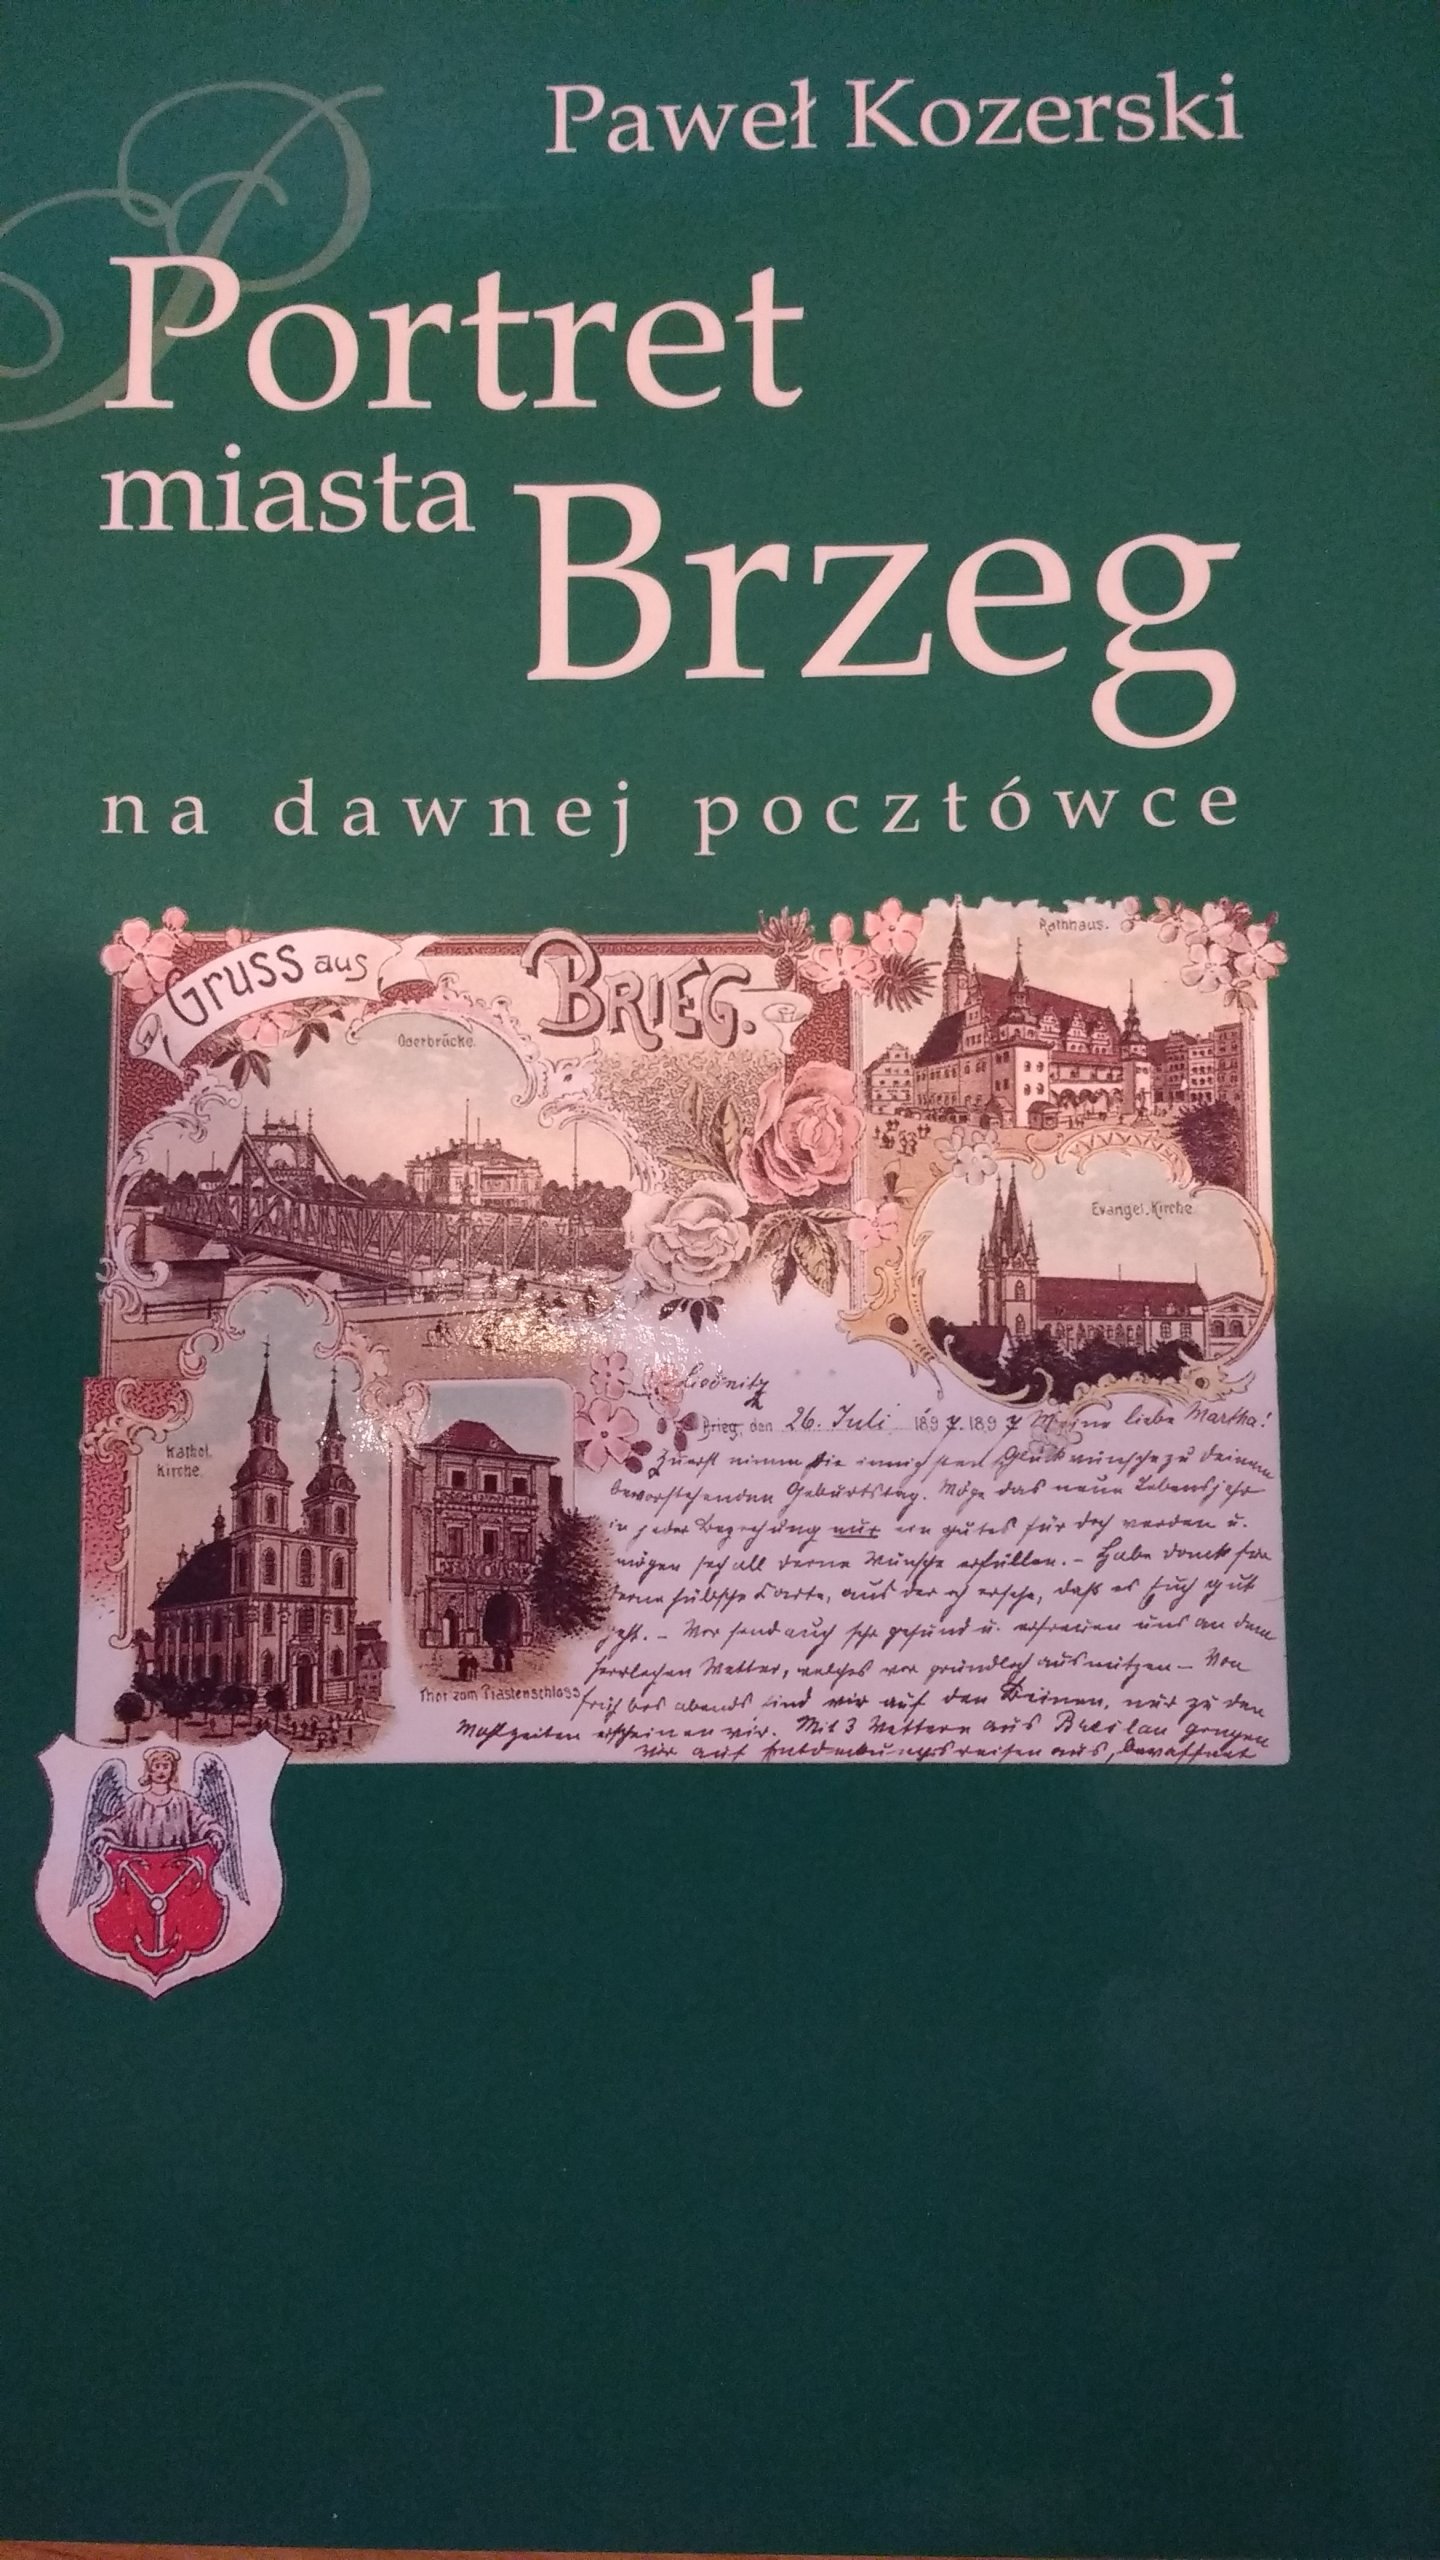 P. Kozerski Brzeg Stare pocztówki NOWE